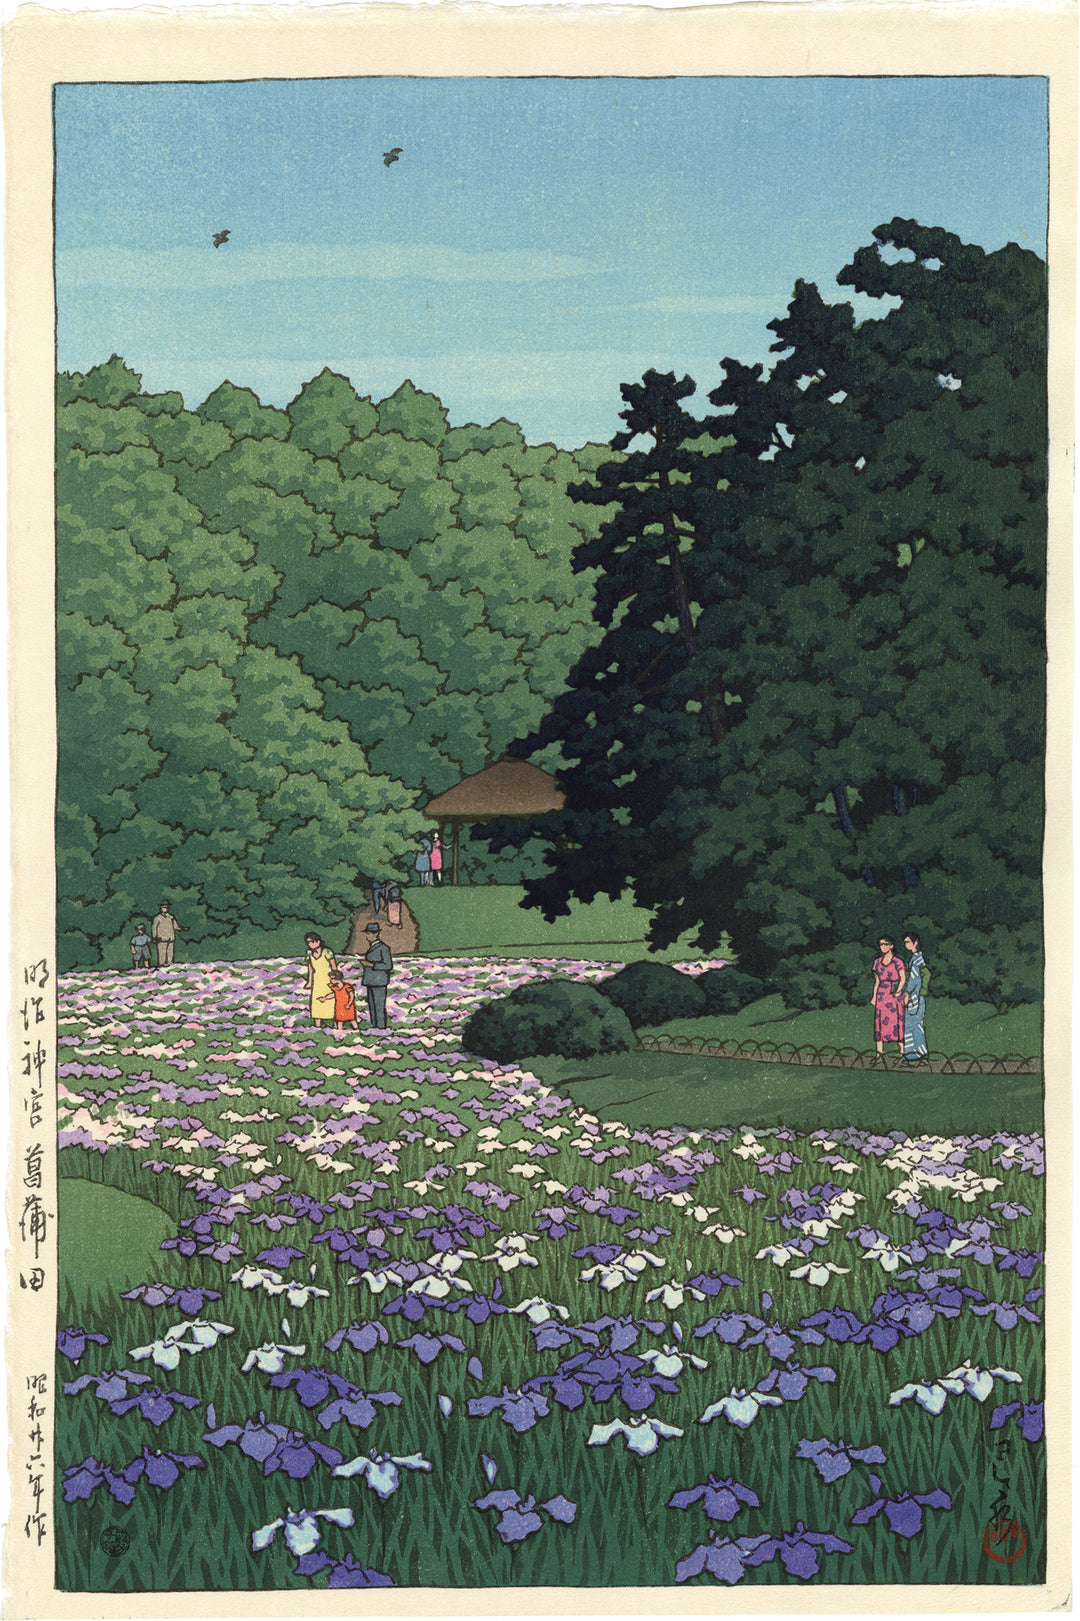 حديقة شوبو، ضريح ميجي، طوكيو by Hasui Kawase - 1951 م - 38.8 في 25.8 سم 